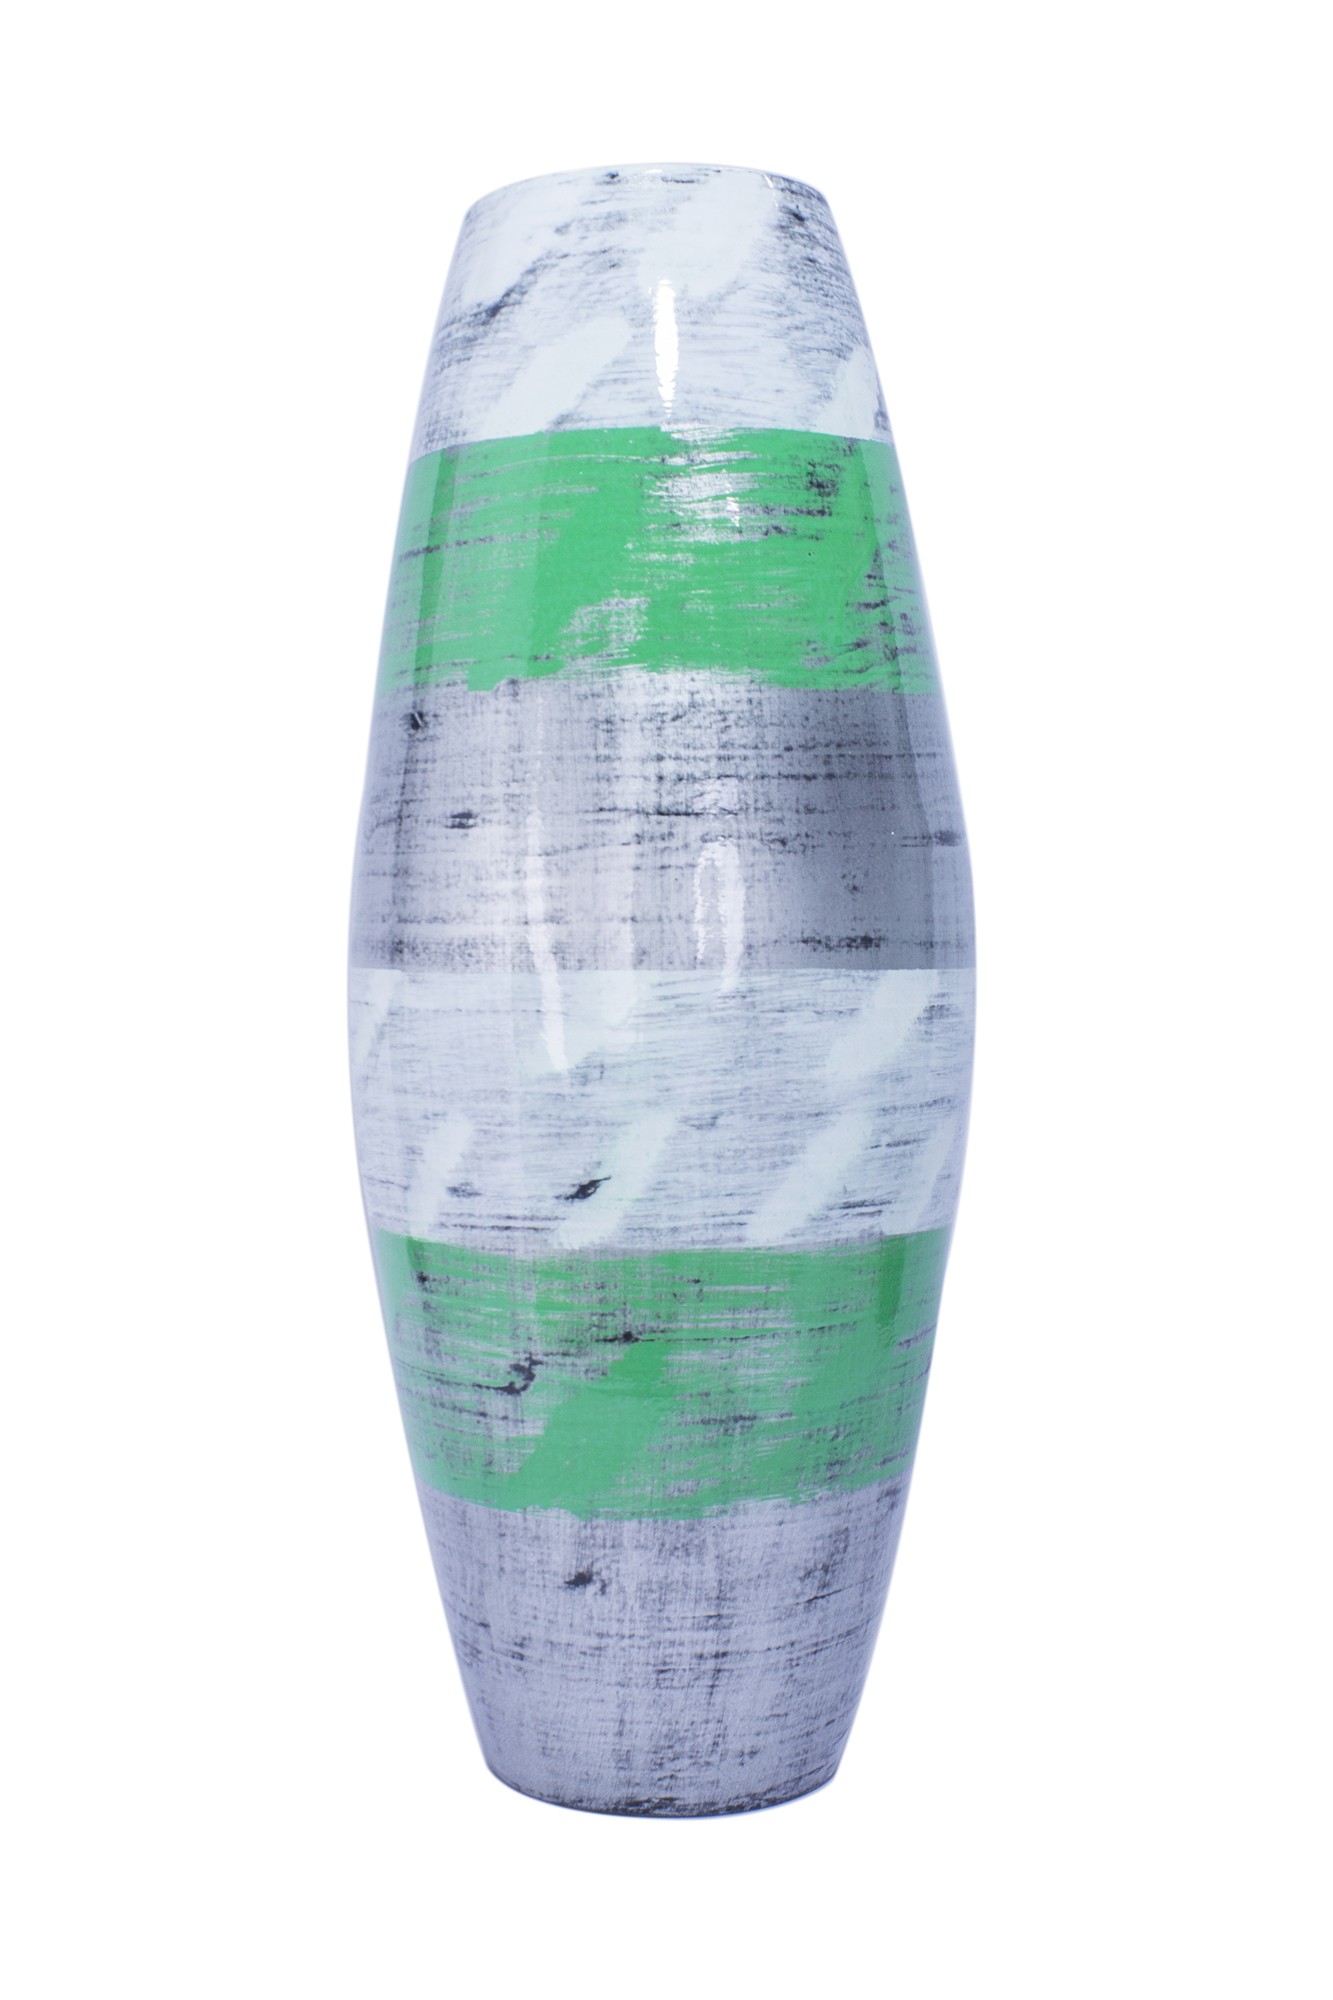 12" X 12" X 27" White, Green, Silver Bamboo Spun Bamboo Floor Vase